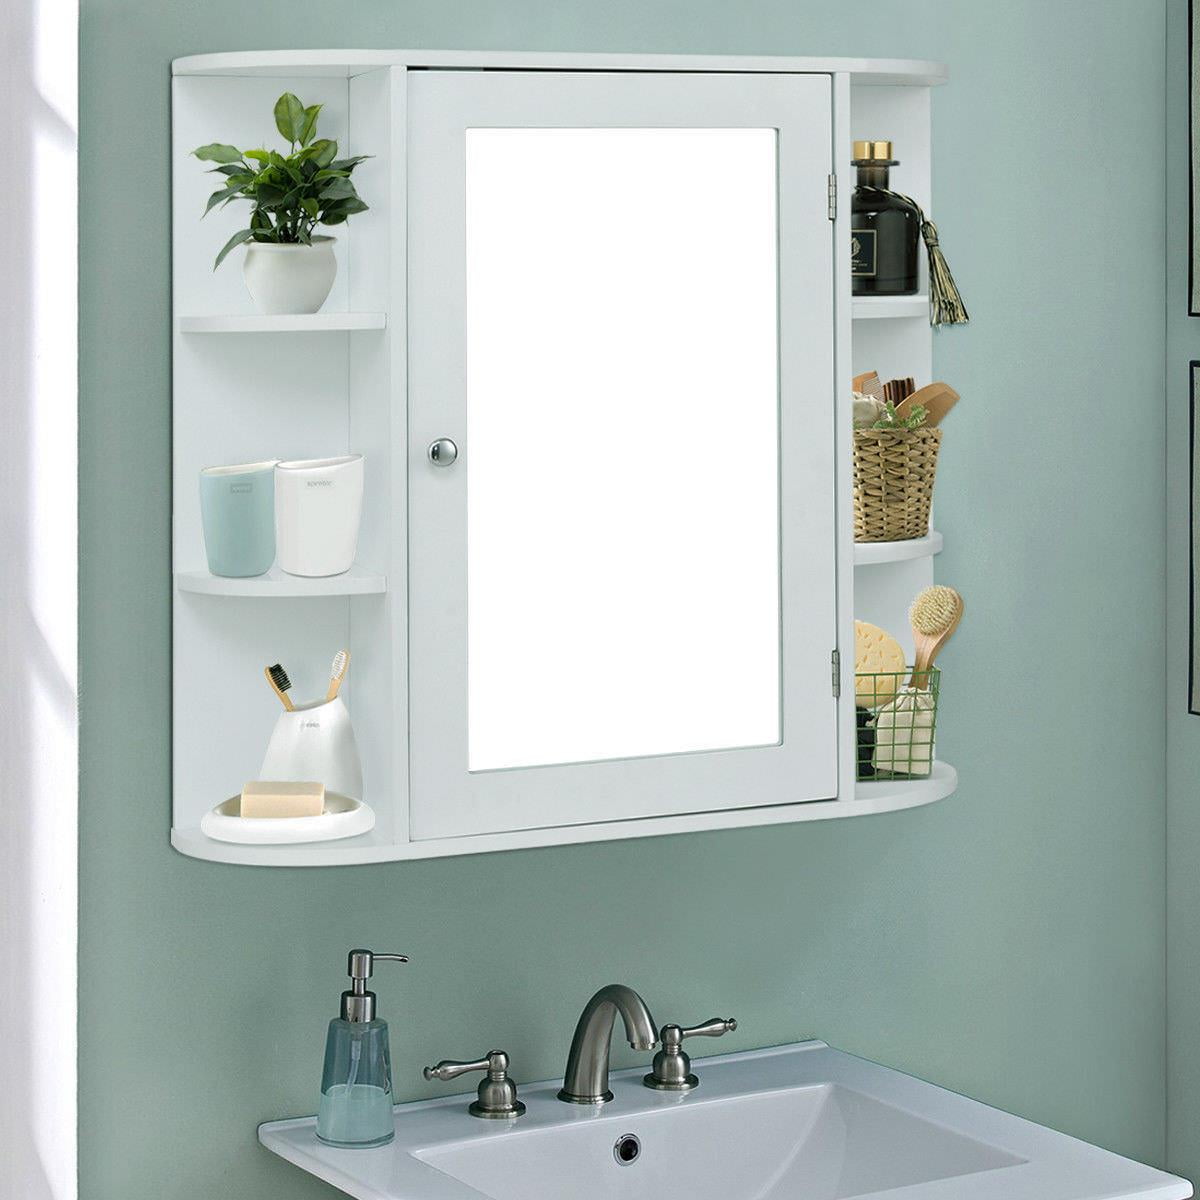 3-tier Single Door Mirror Indoor Bathroom Wall Mounted Cabinet Shelf White 